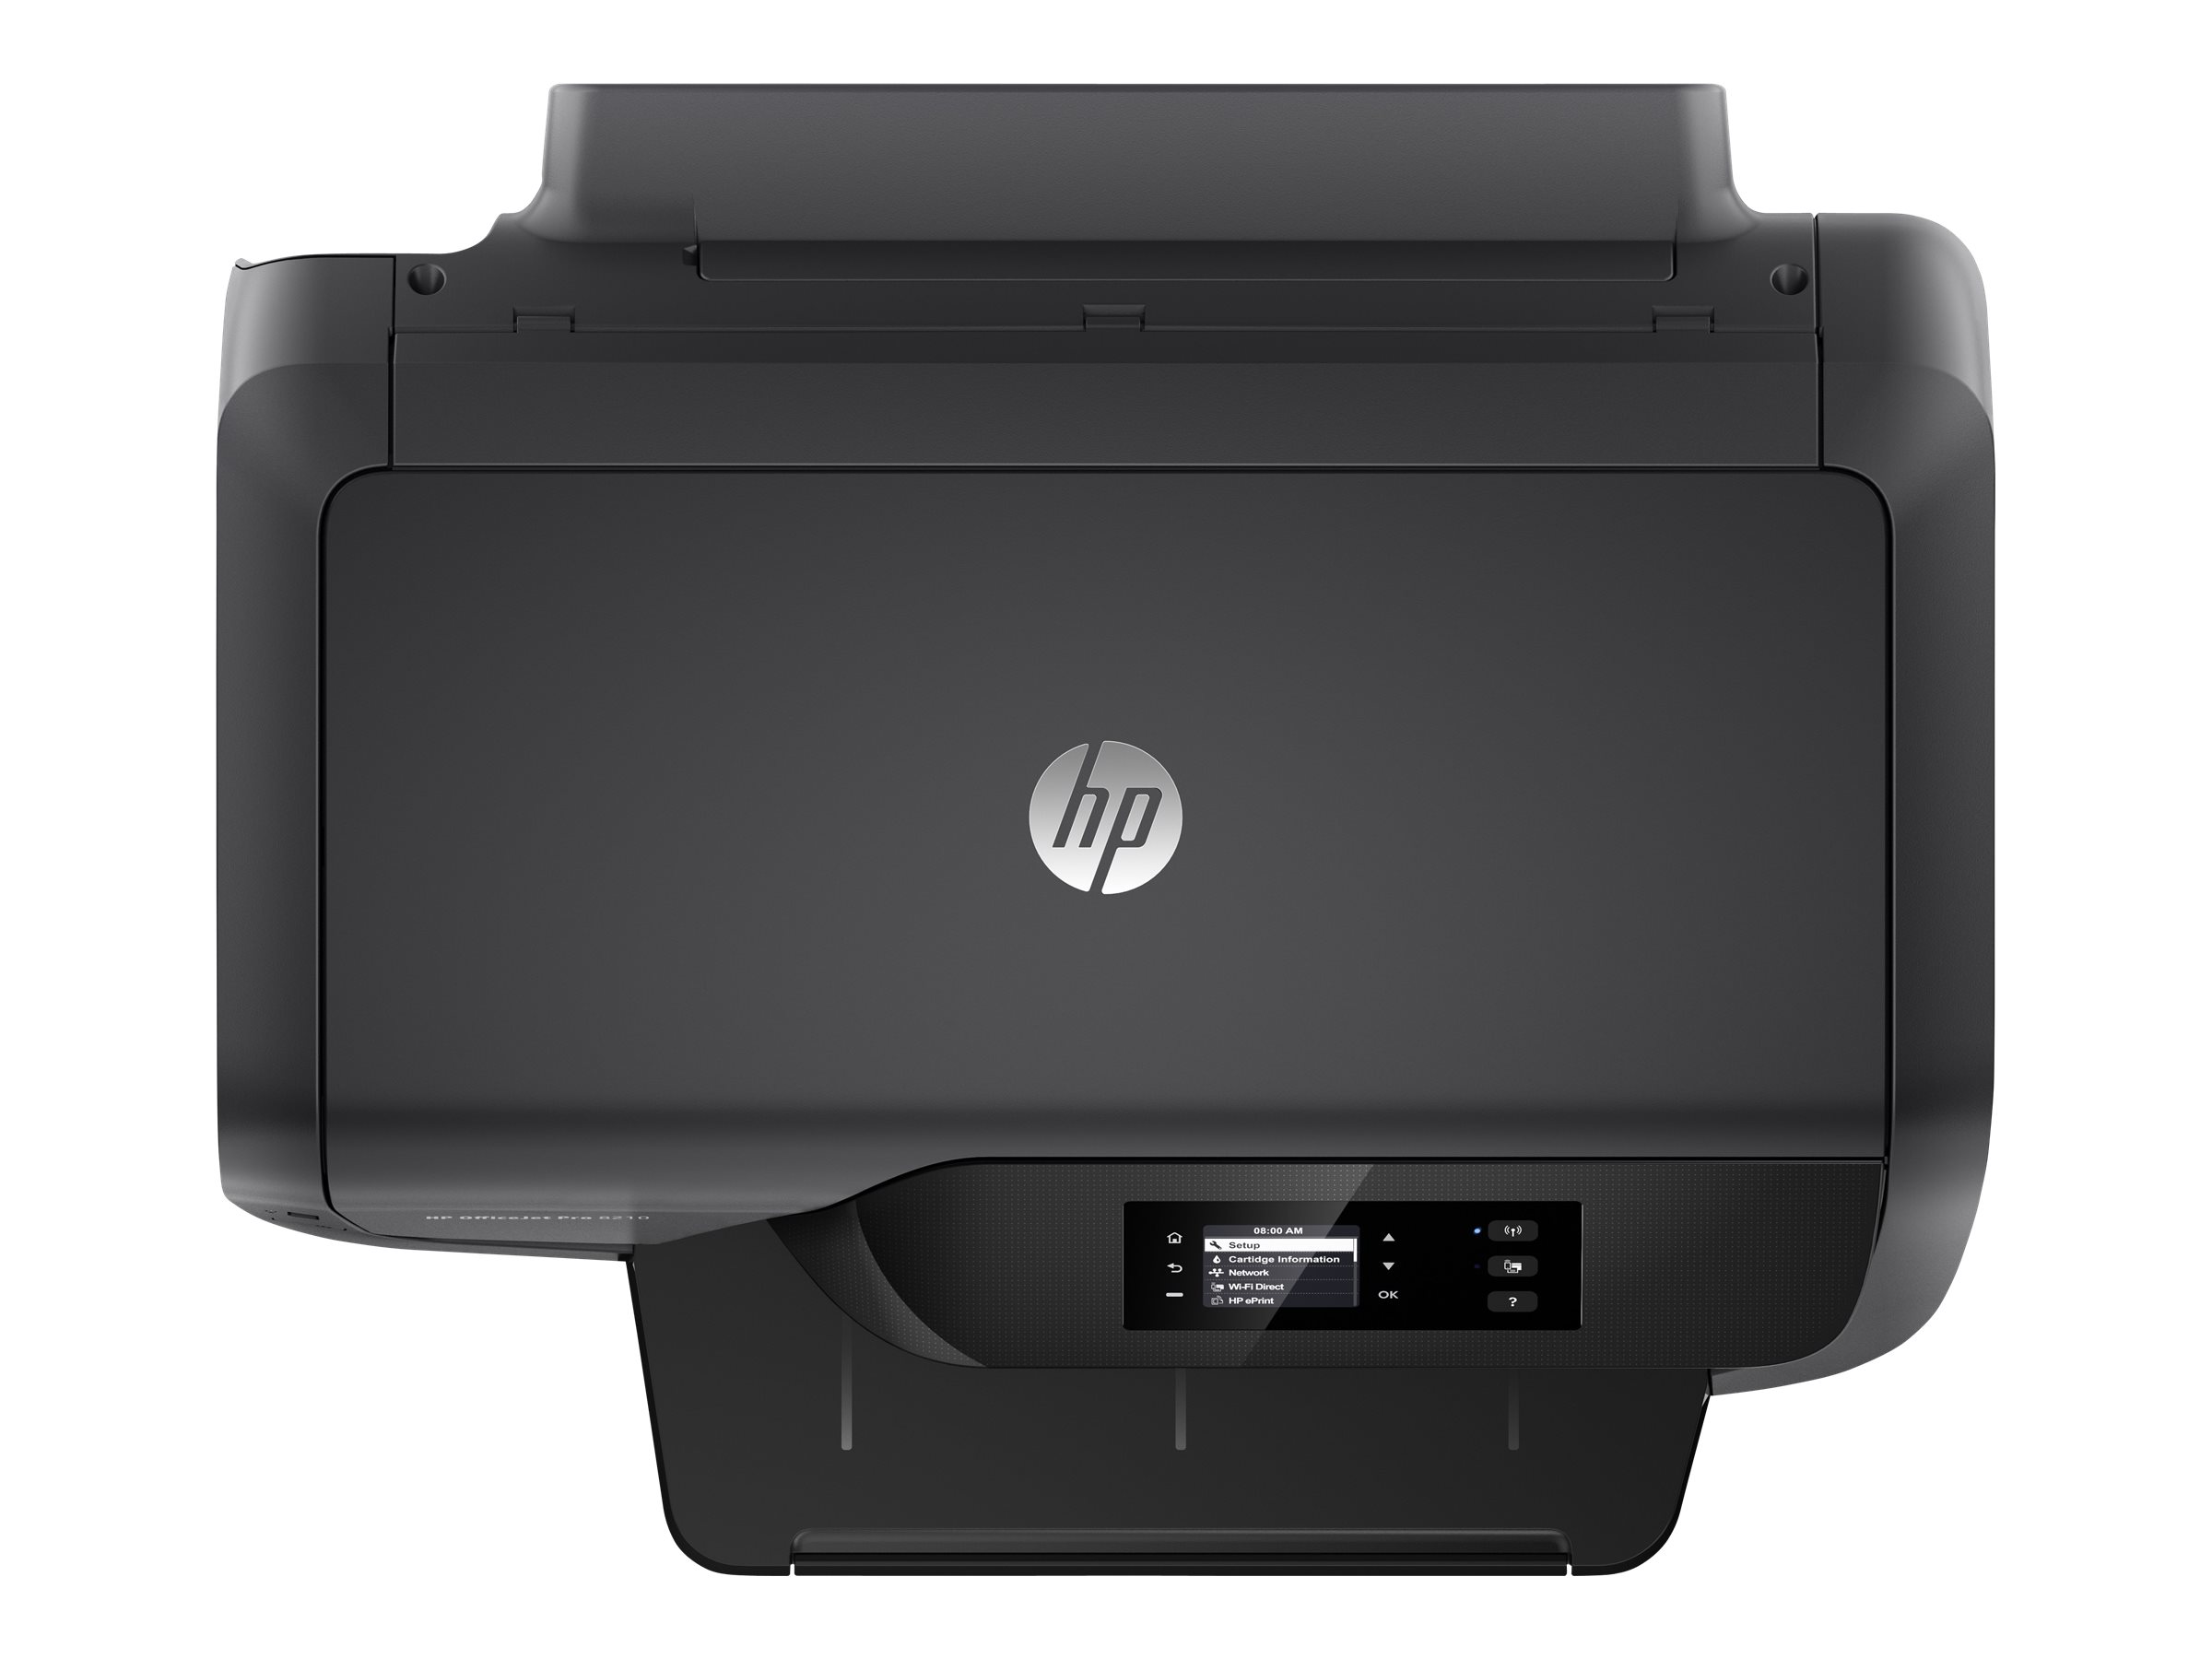 Hewlett Packard (HP) HP Officejet Pro 8210 Printer D9L63A